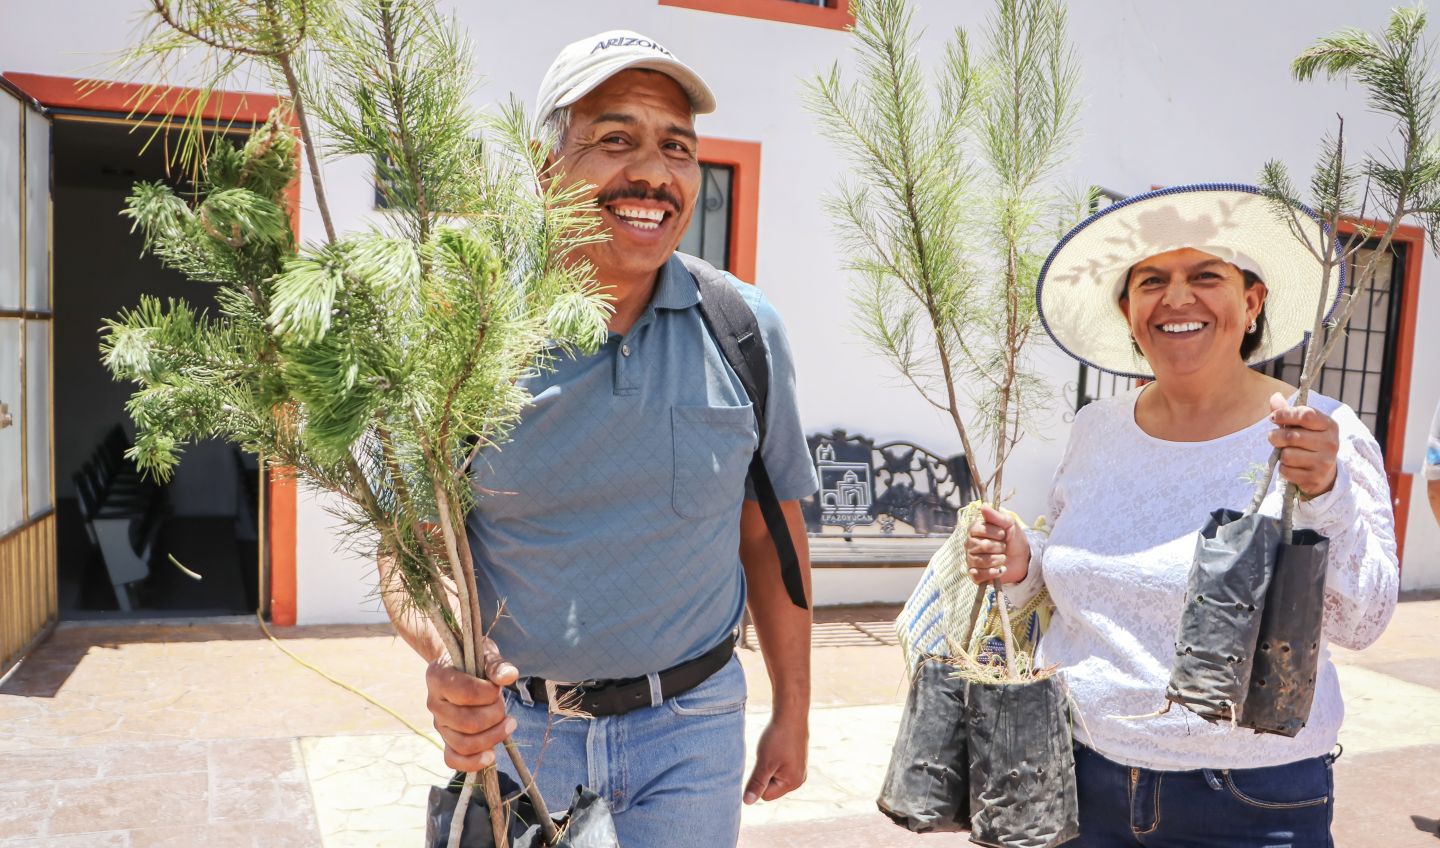 Donadas más de 100 mil plantas para impulsar la restauración ecológica en Hidalgo